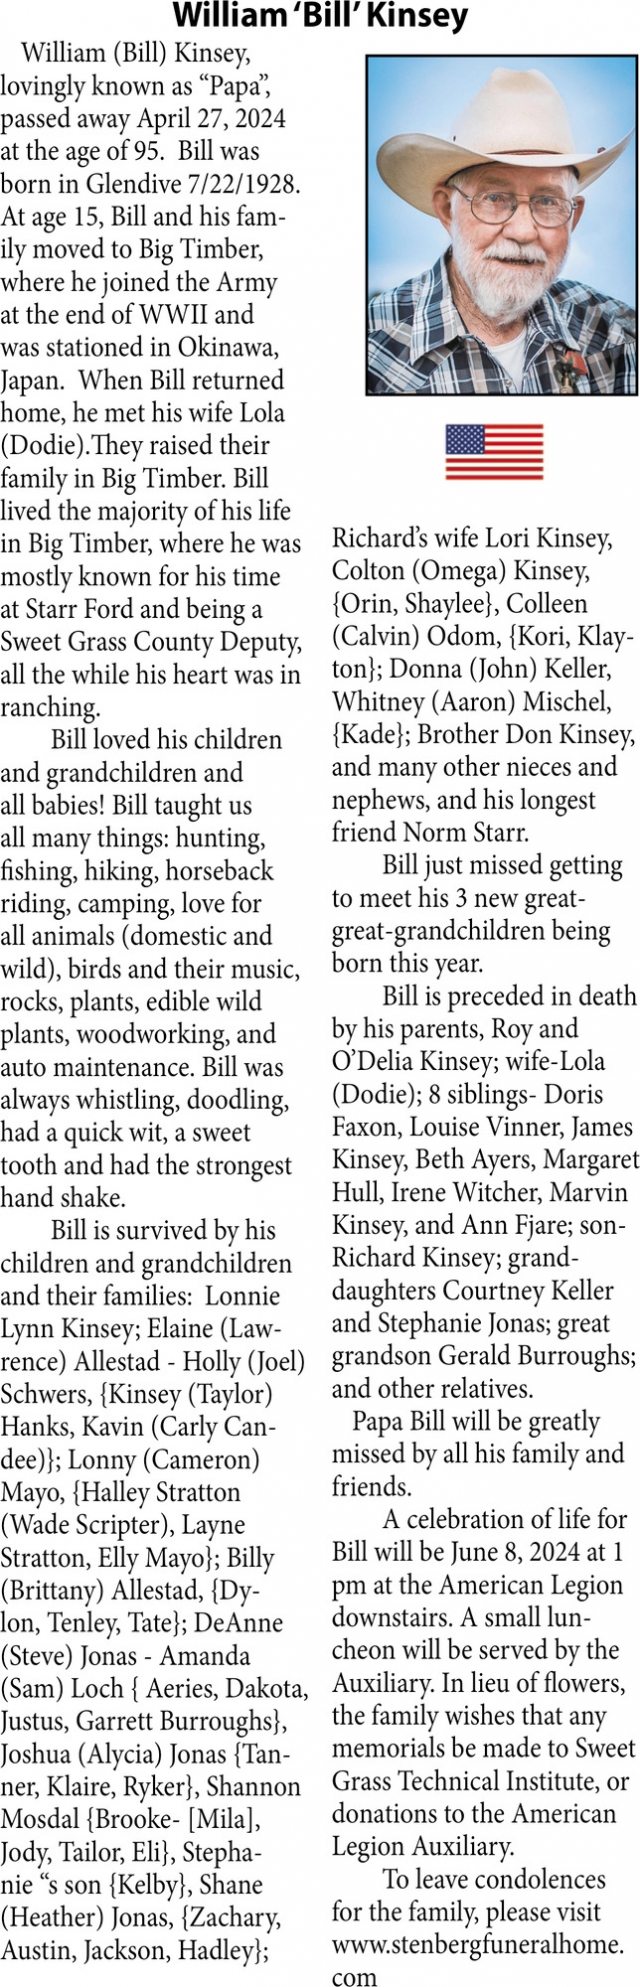 William 'Bill' Kinsey, Obituaries, Glendive, MT